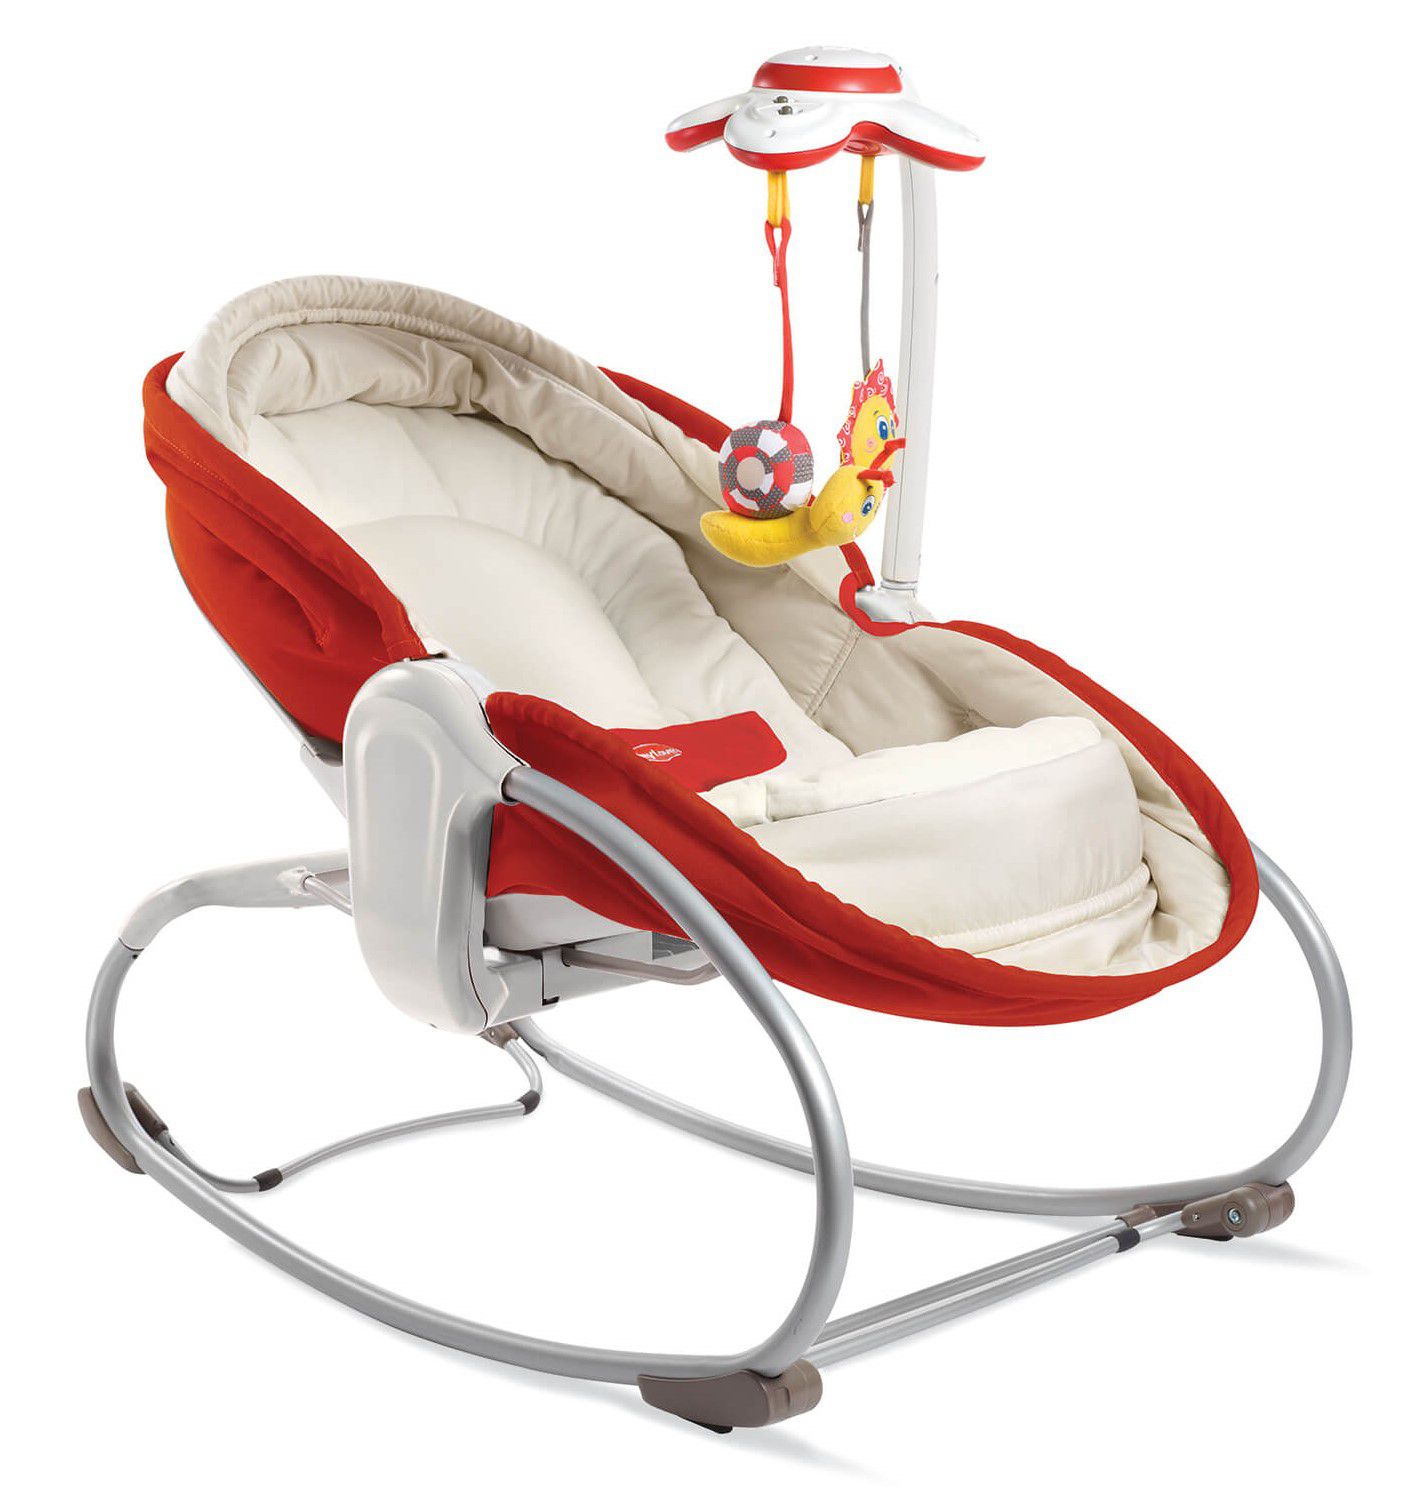 Cadeira de Balanço 3 em 1 Rocker Napper Vermelha Tiny Love - Tutti Amore -  A melhor loja para o seu bebê